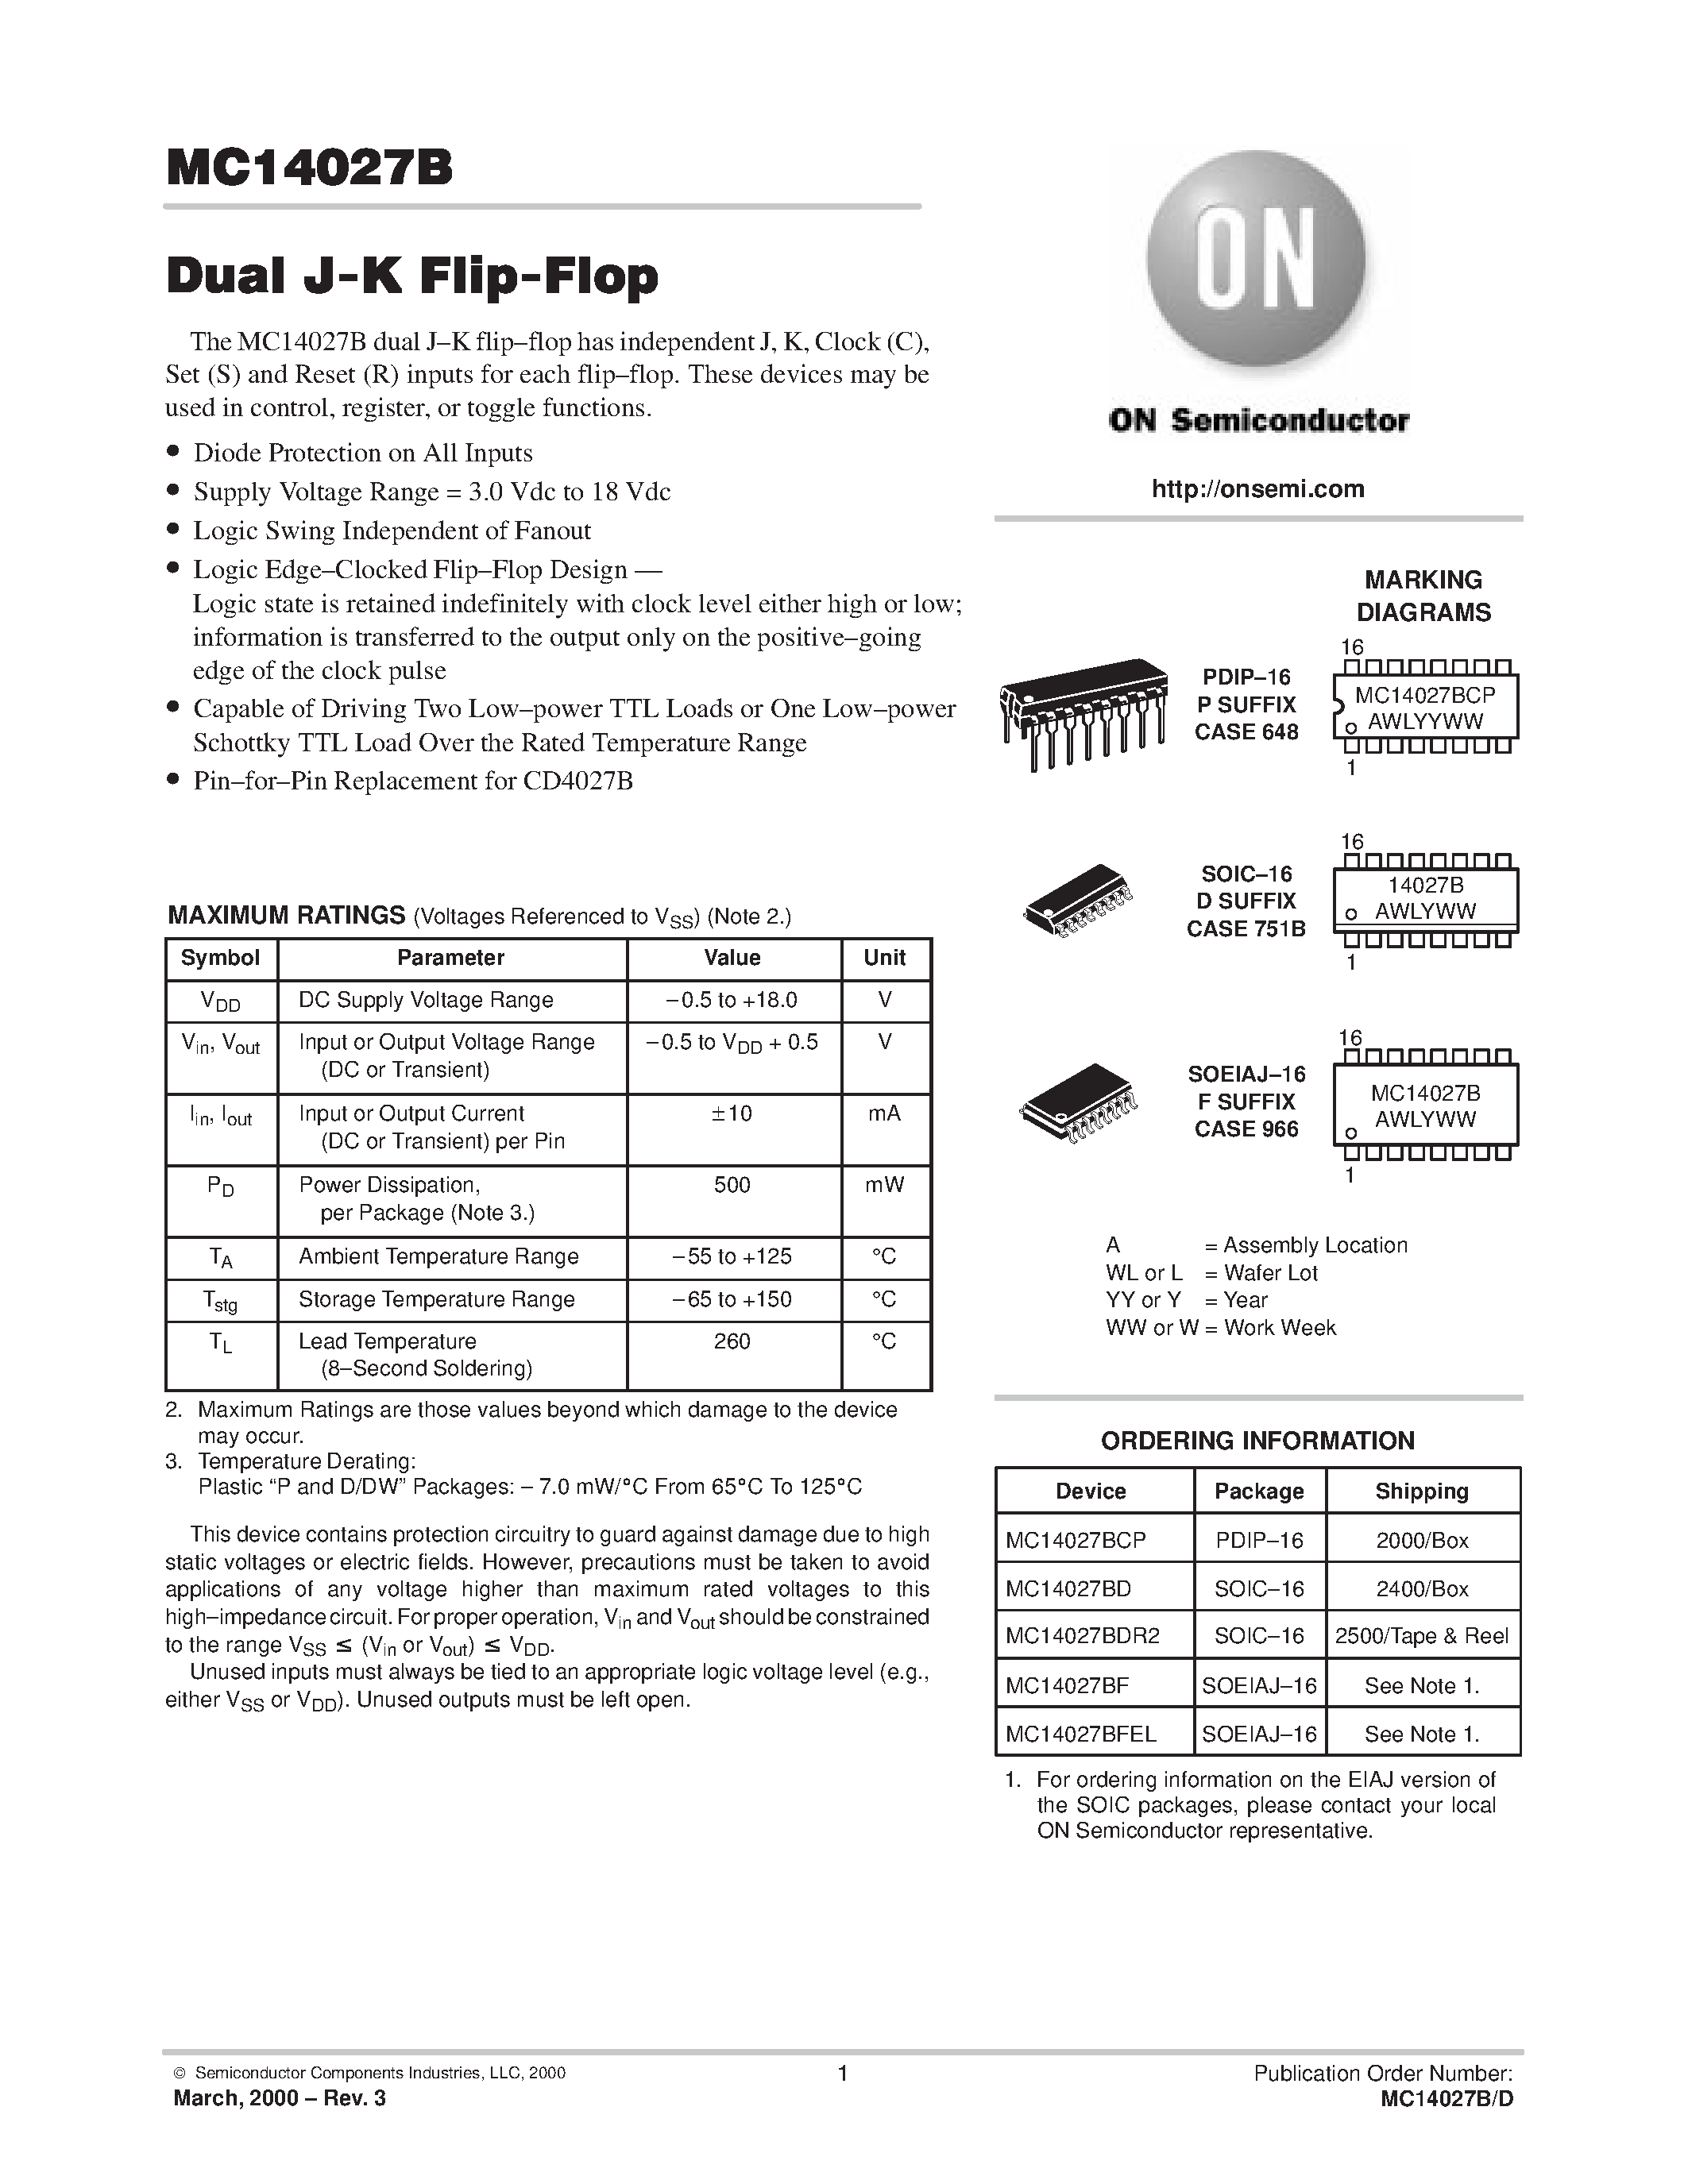 Даташит MC14027BF - Dual J-K Flip-Flop страница 1